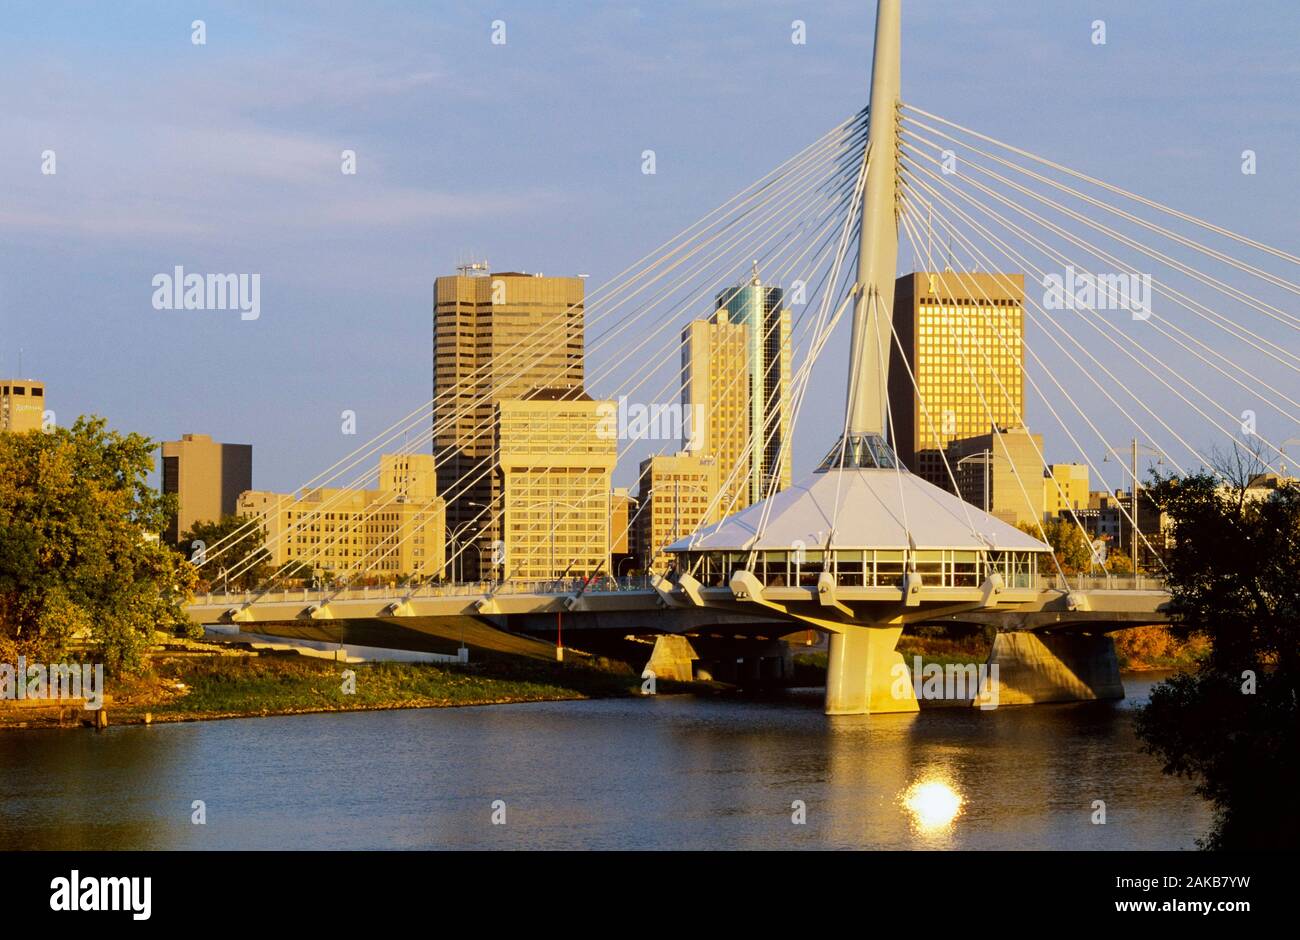 Cityscape with Provencher Bridge over Red River, Winnipeg, Manitoba, Canada Stock Photo